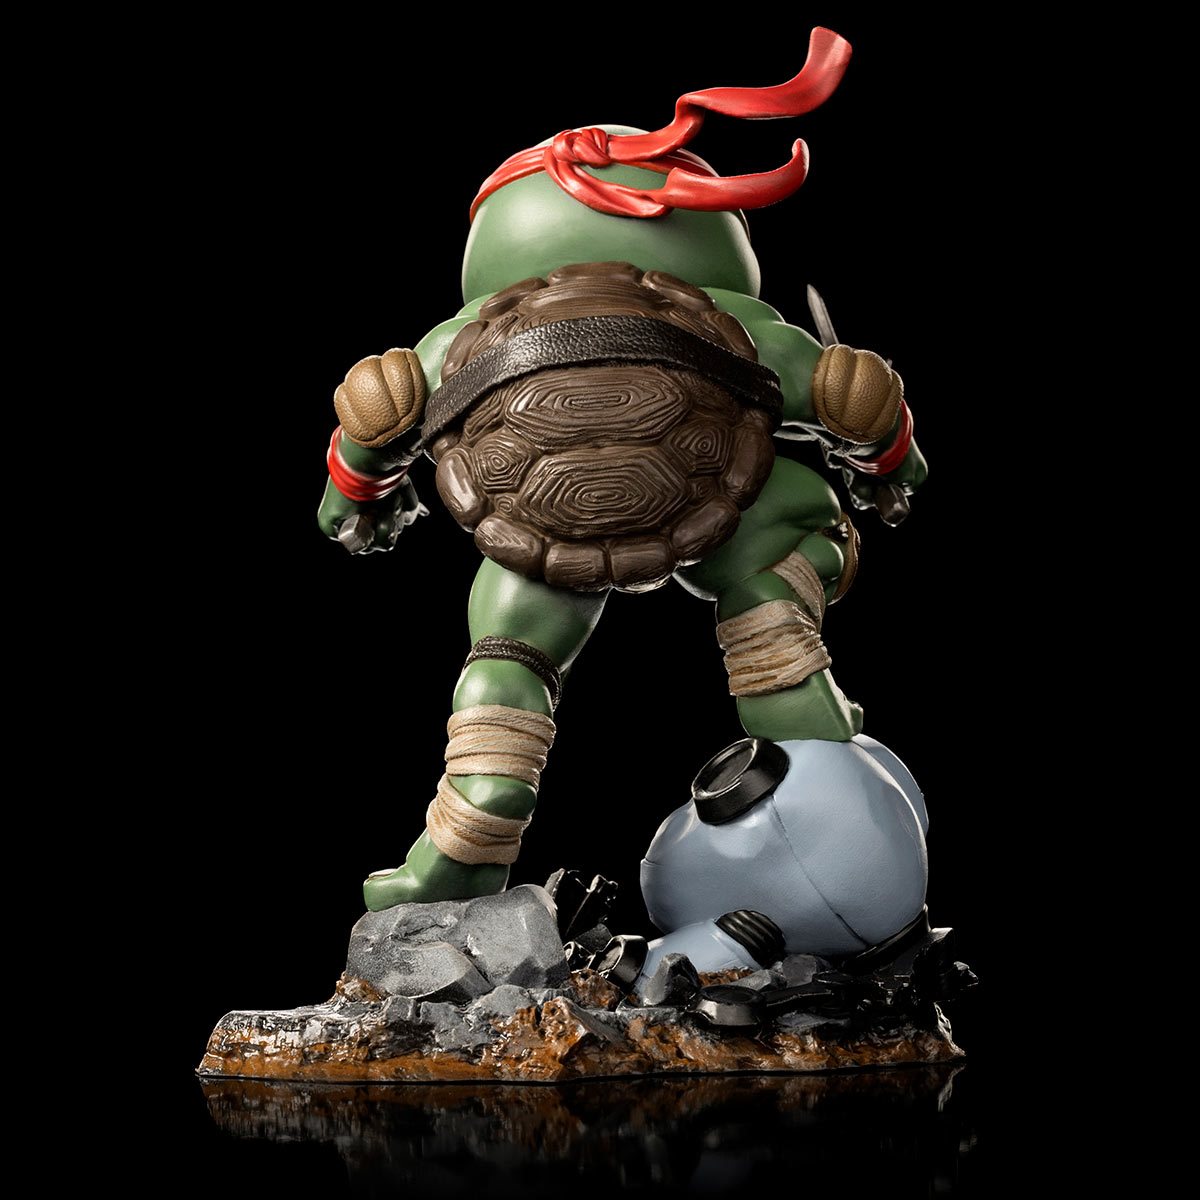 MiniCo. Vinyl Figure: Teenage Mutant Ninja Turtles - Raphael